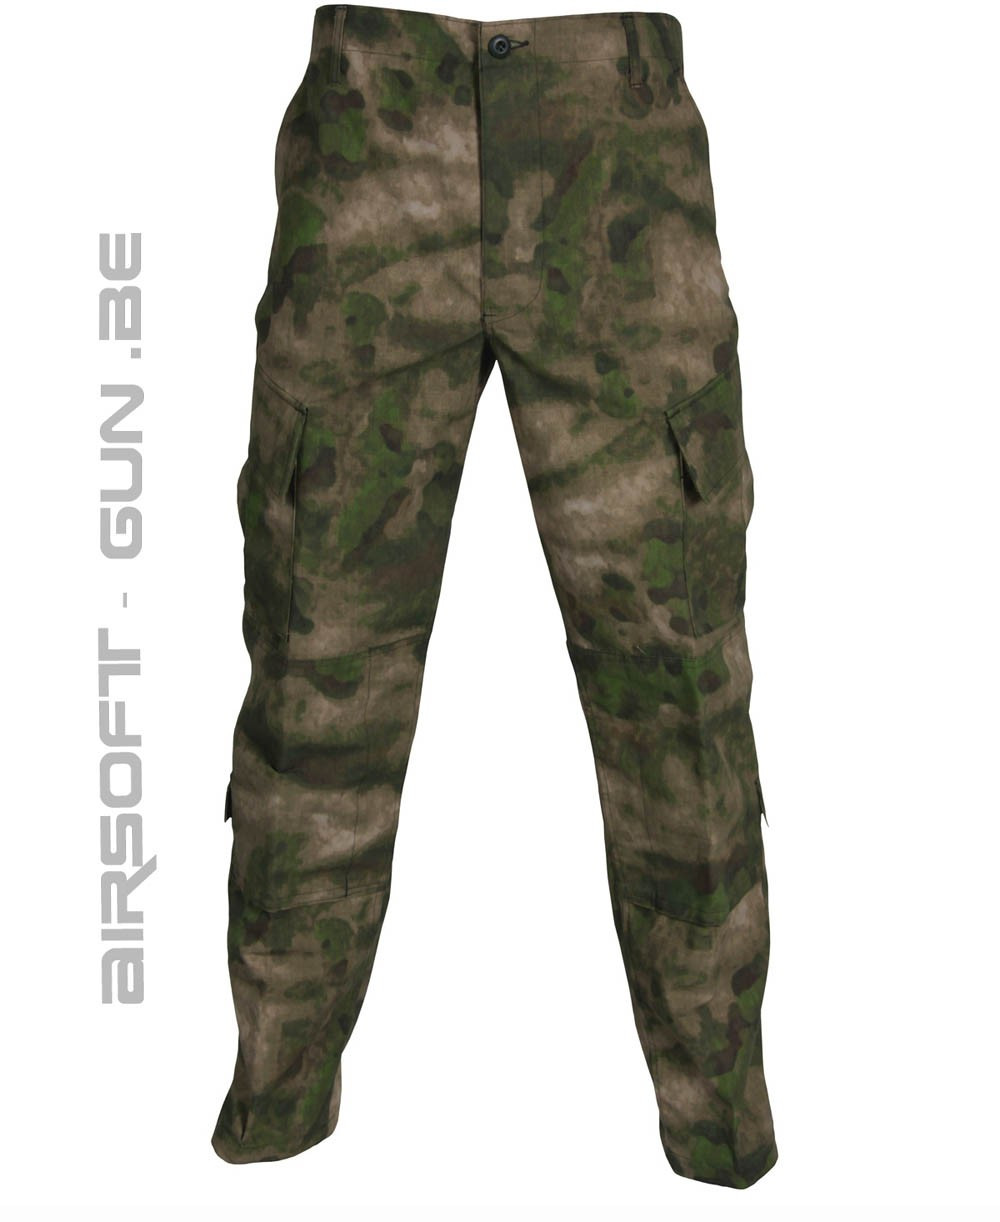 Pantalon combat tactique militaire S19 – Action Airsoft